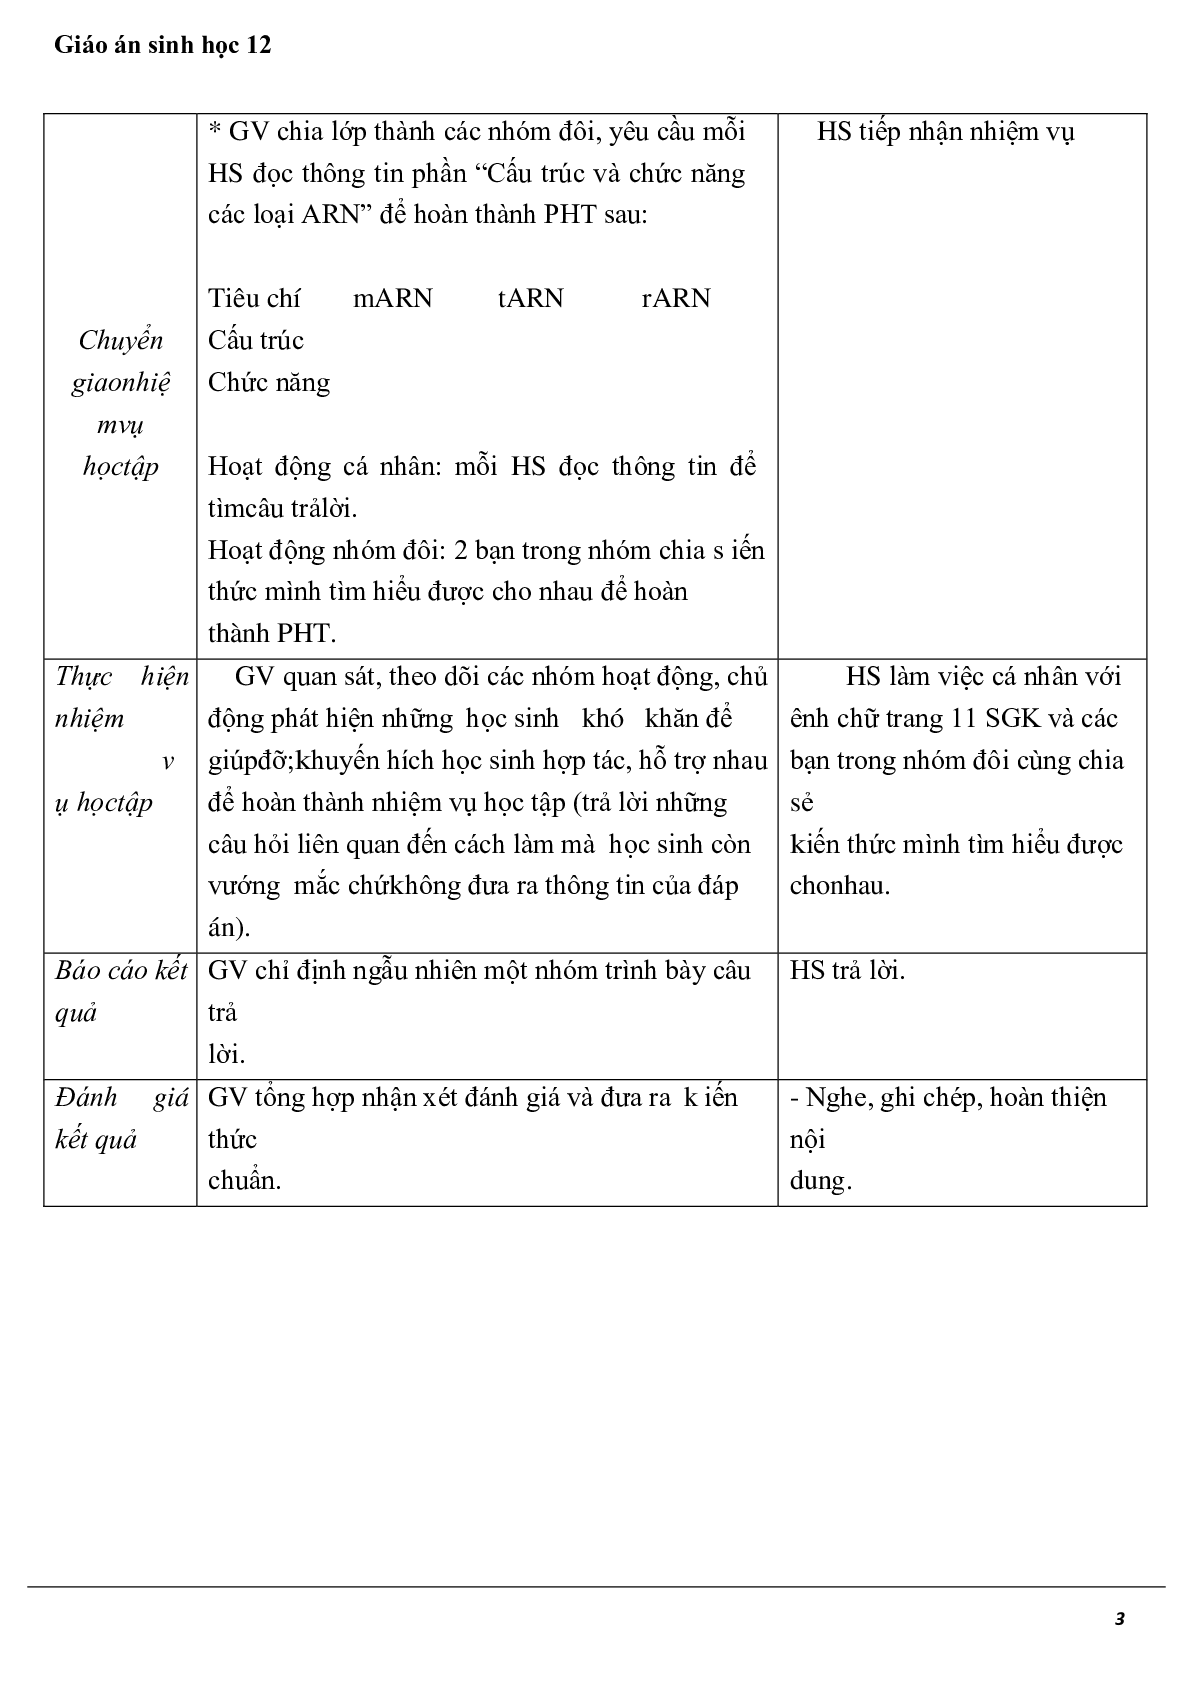 Giáo án Sinh học 12 Bài 2: Phiên mã và dịch mã mới nhất (trang 3)